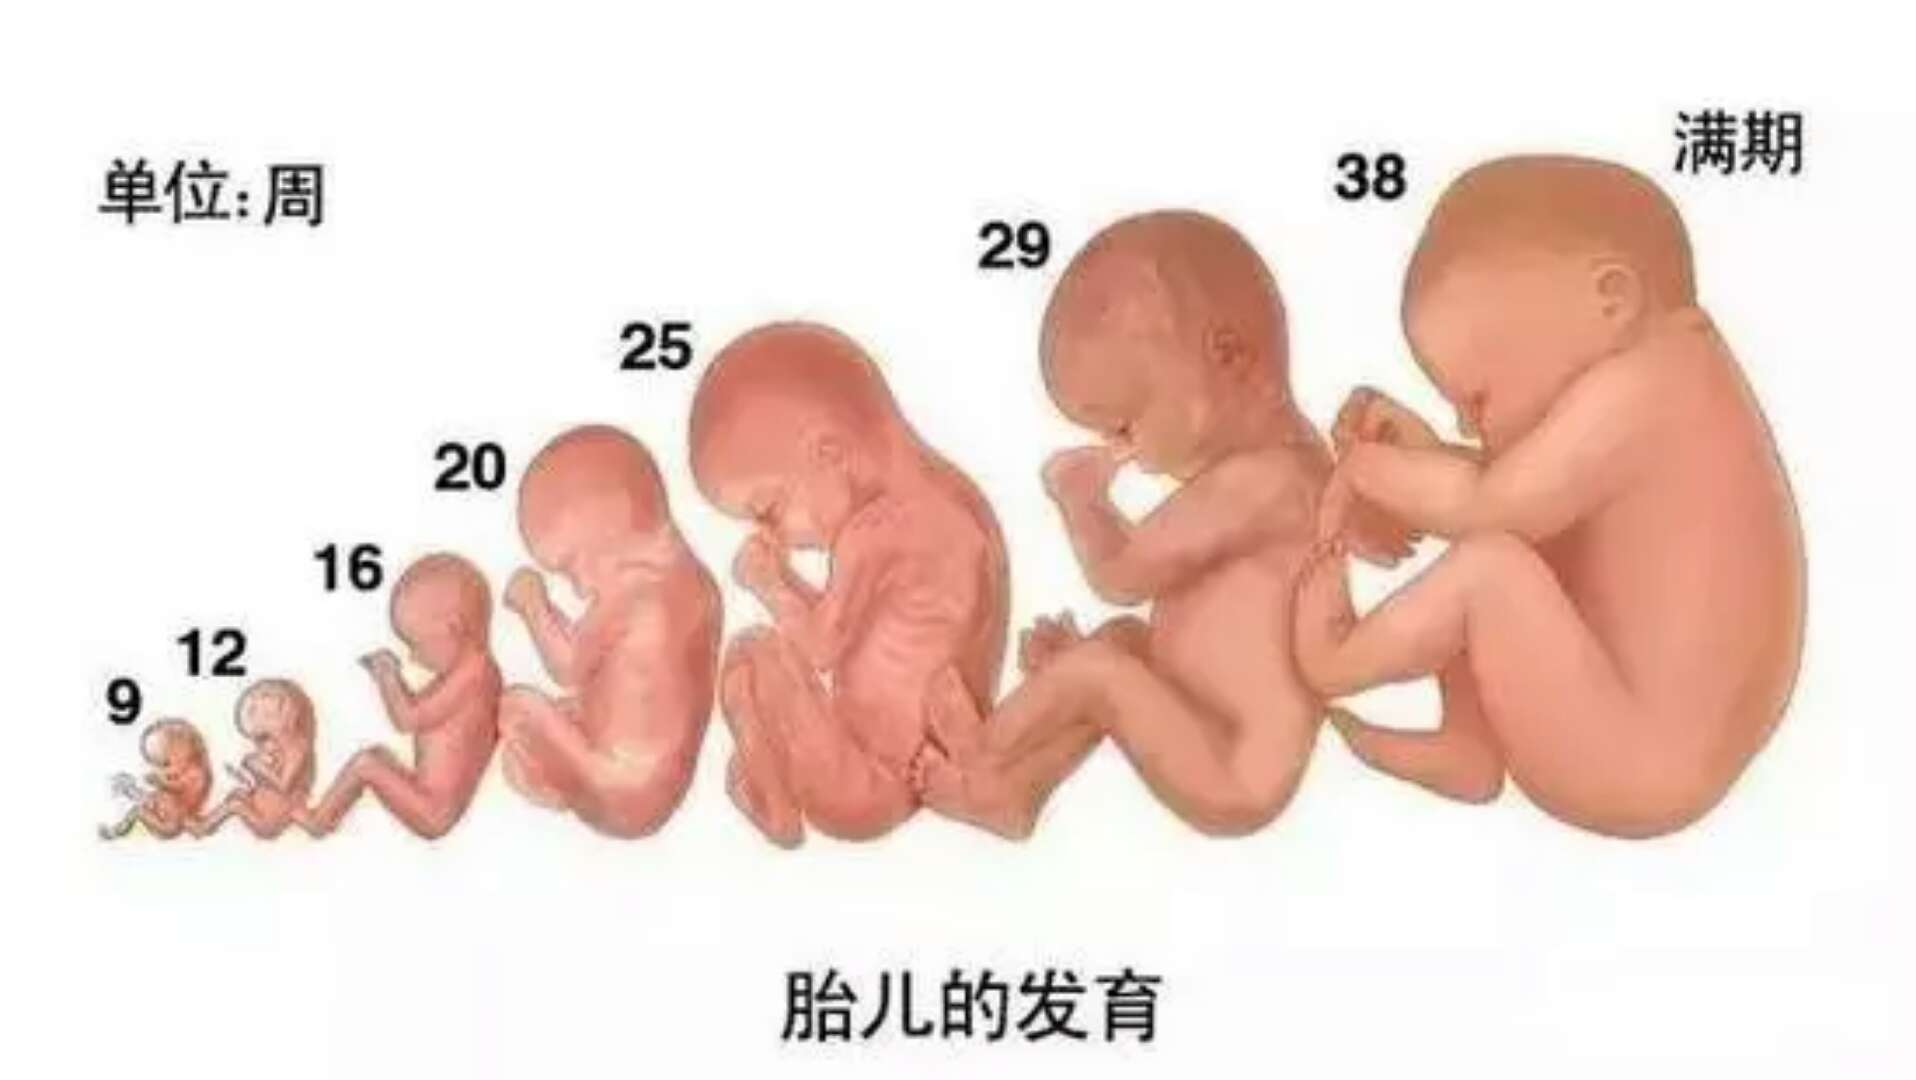 胎儿发育全过程,准妈妈们想看吗?